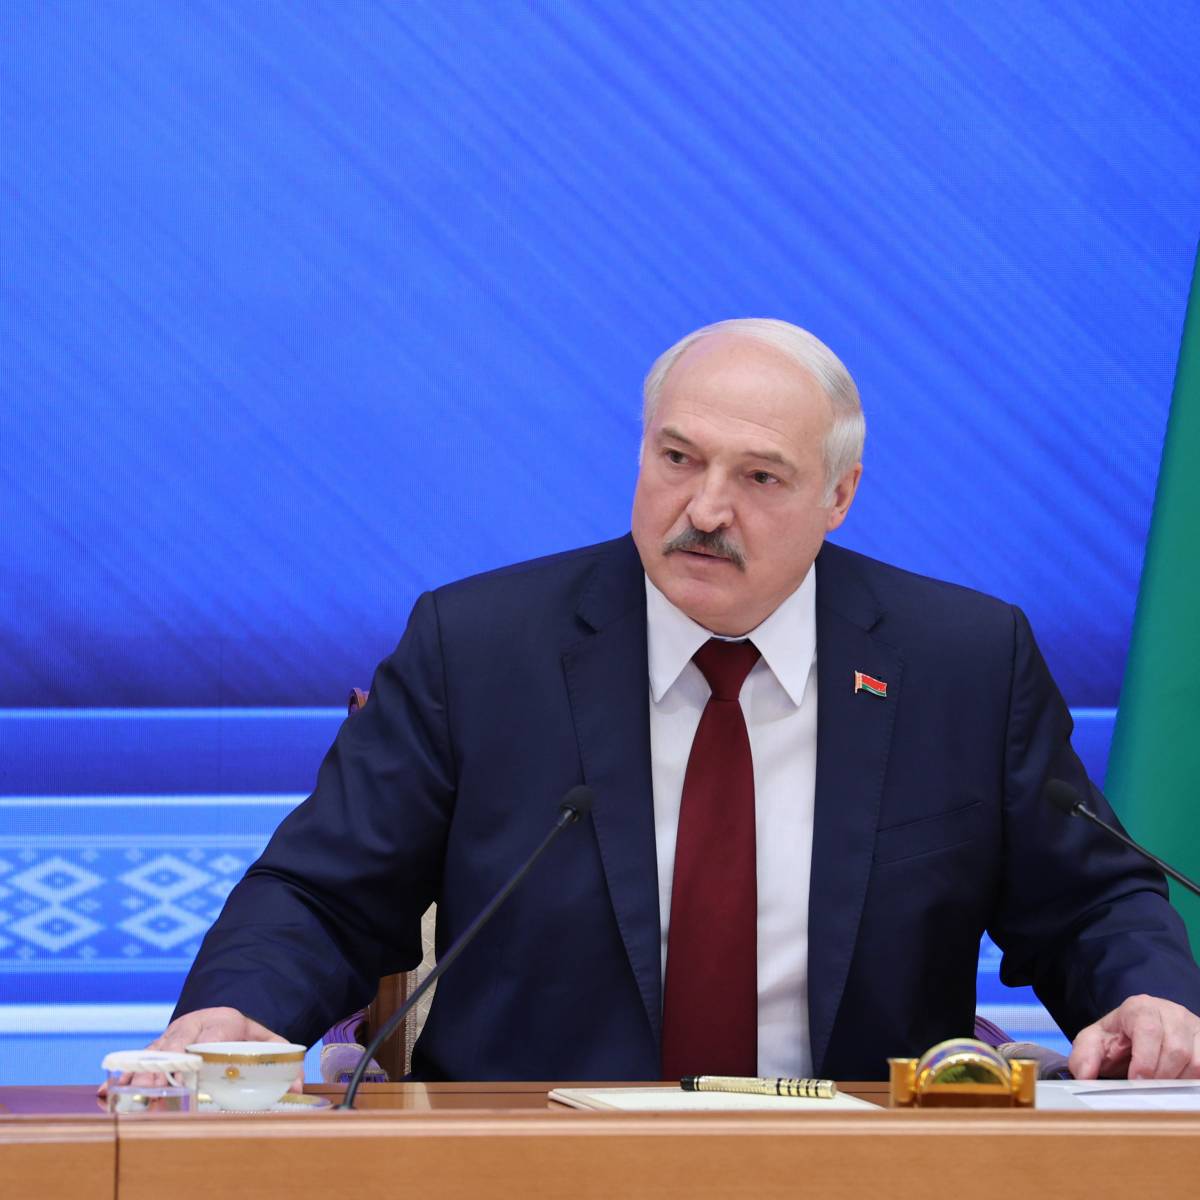 Запад «давит» на Белоруссию с использованием санкций, а МВФ её финансирует